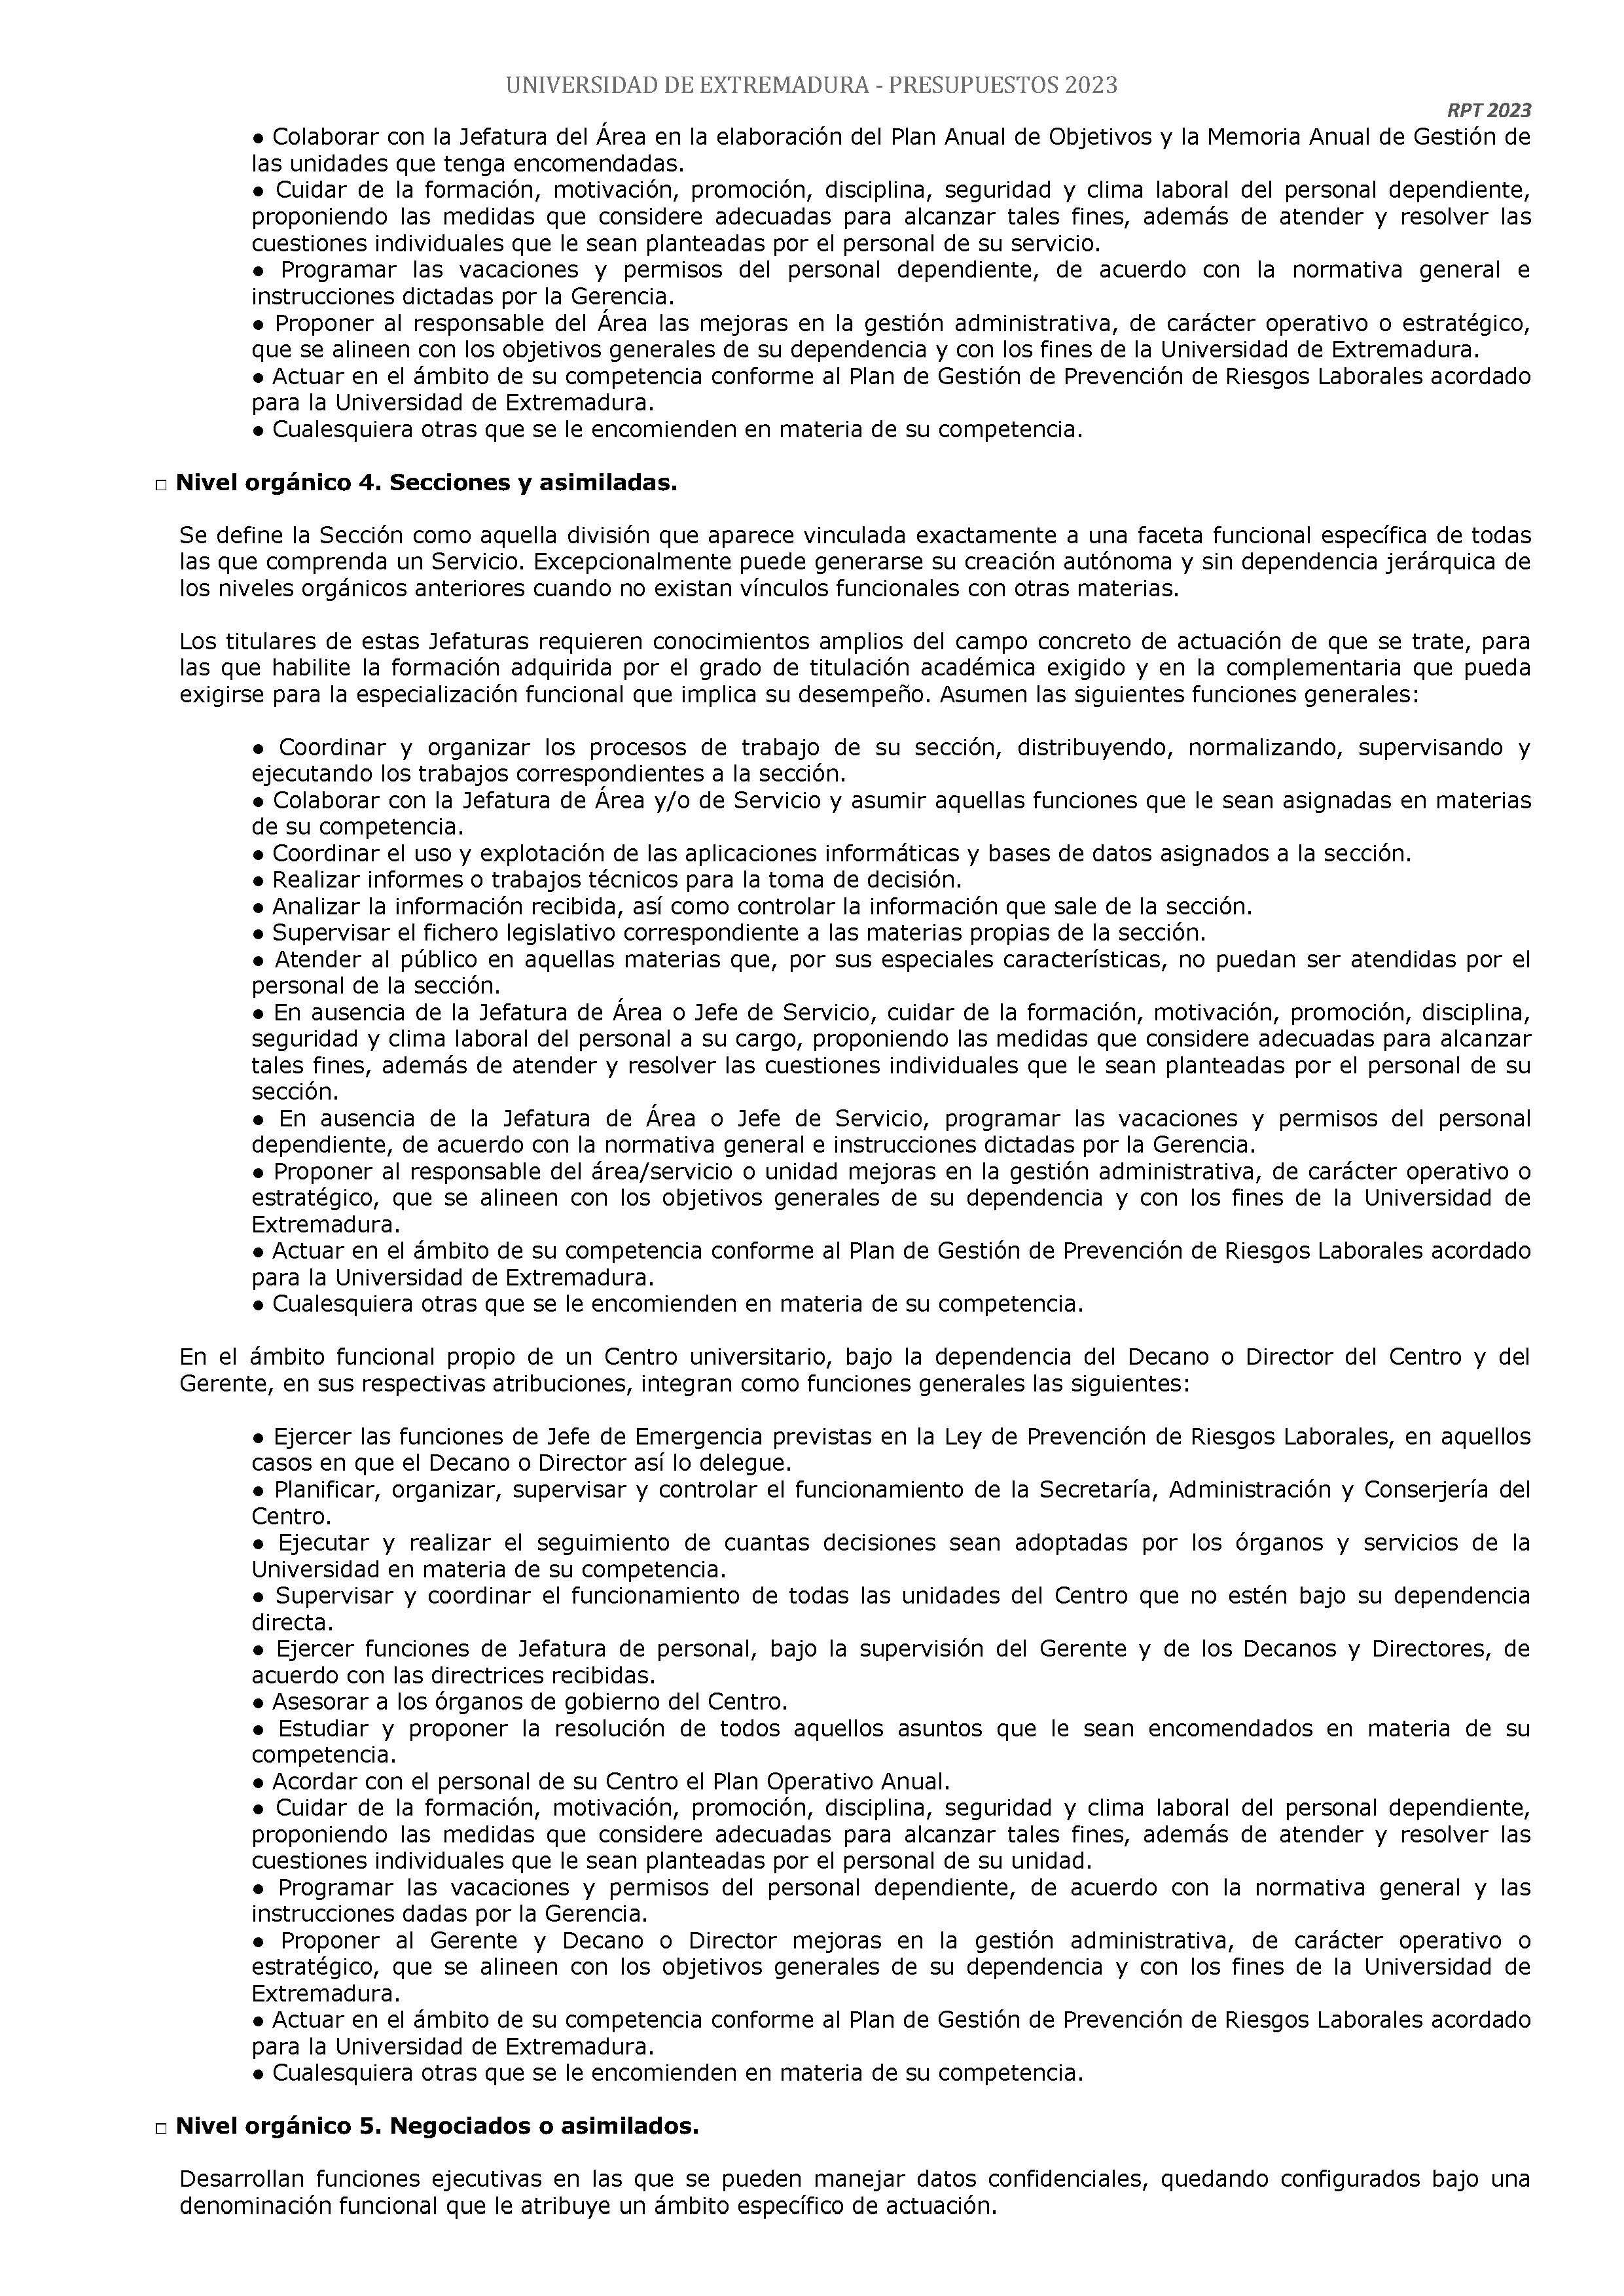 ANEXO - ESTADO NUMERICO DEL PRESUPUESTO Pag 126